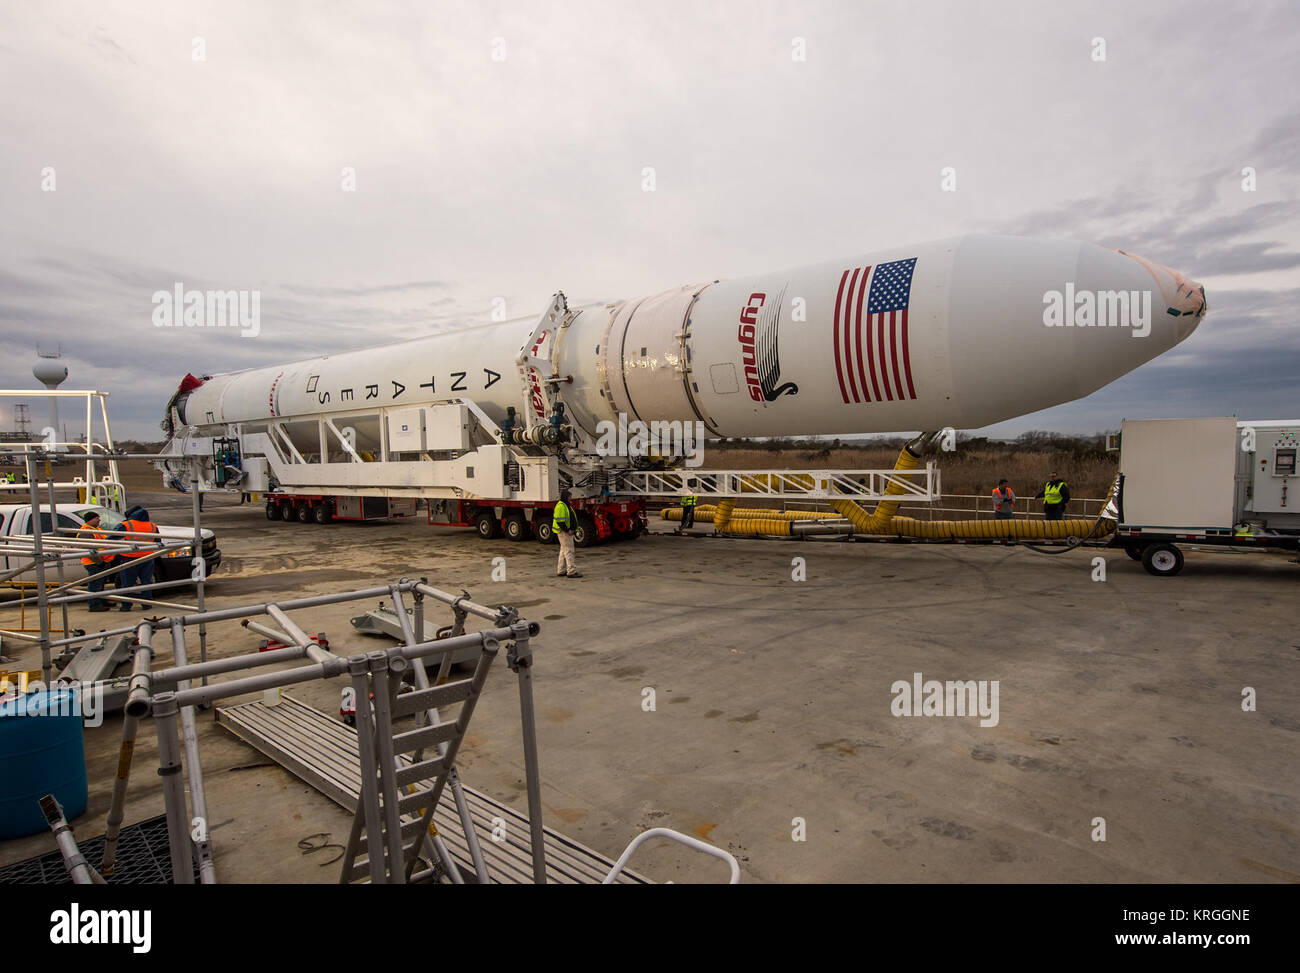 Die Orbital Sciences Corporation Antares Rakete wird gesehen, wie es ausgeliefert wird der NASA Wallops Flight Facility, Sonntag, 5. Januar 2014 im Vorfeld einer geplanten Mittwoch zum Launch Pad-0, 31.01.8., 1:32 Uhr EST, Wallops Island, VA. Die Antares wird eine Cygnus Raumfahrzeuge auf einem Cargo resupply Mission zur Internationalen Raumstation. Die Orbital-1 Mission ist Orbital Sciences' ersten vertraglich vereinbarten Fracht Lieferung Flug zur Raumstation für die NASA. Unter die Ladung an Bord Cygnus auf der Raumstation zu starten sind Experimente, crew Bestimmungen, Ersatzteile und andere Hardware. Ph Stockfoto